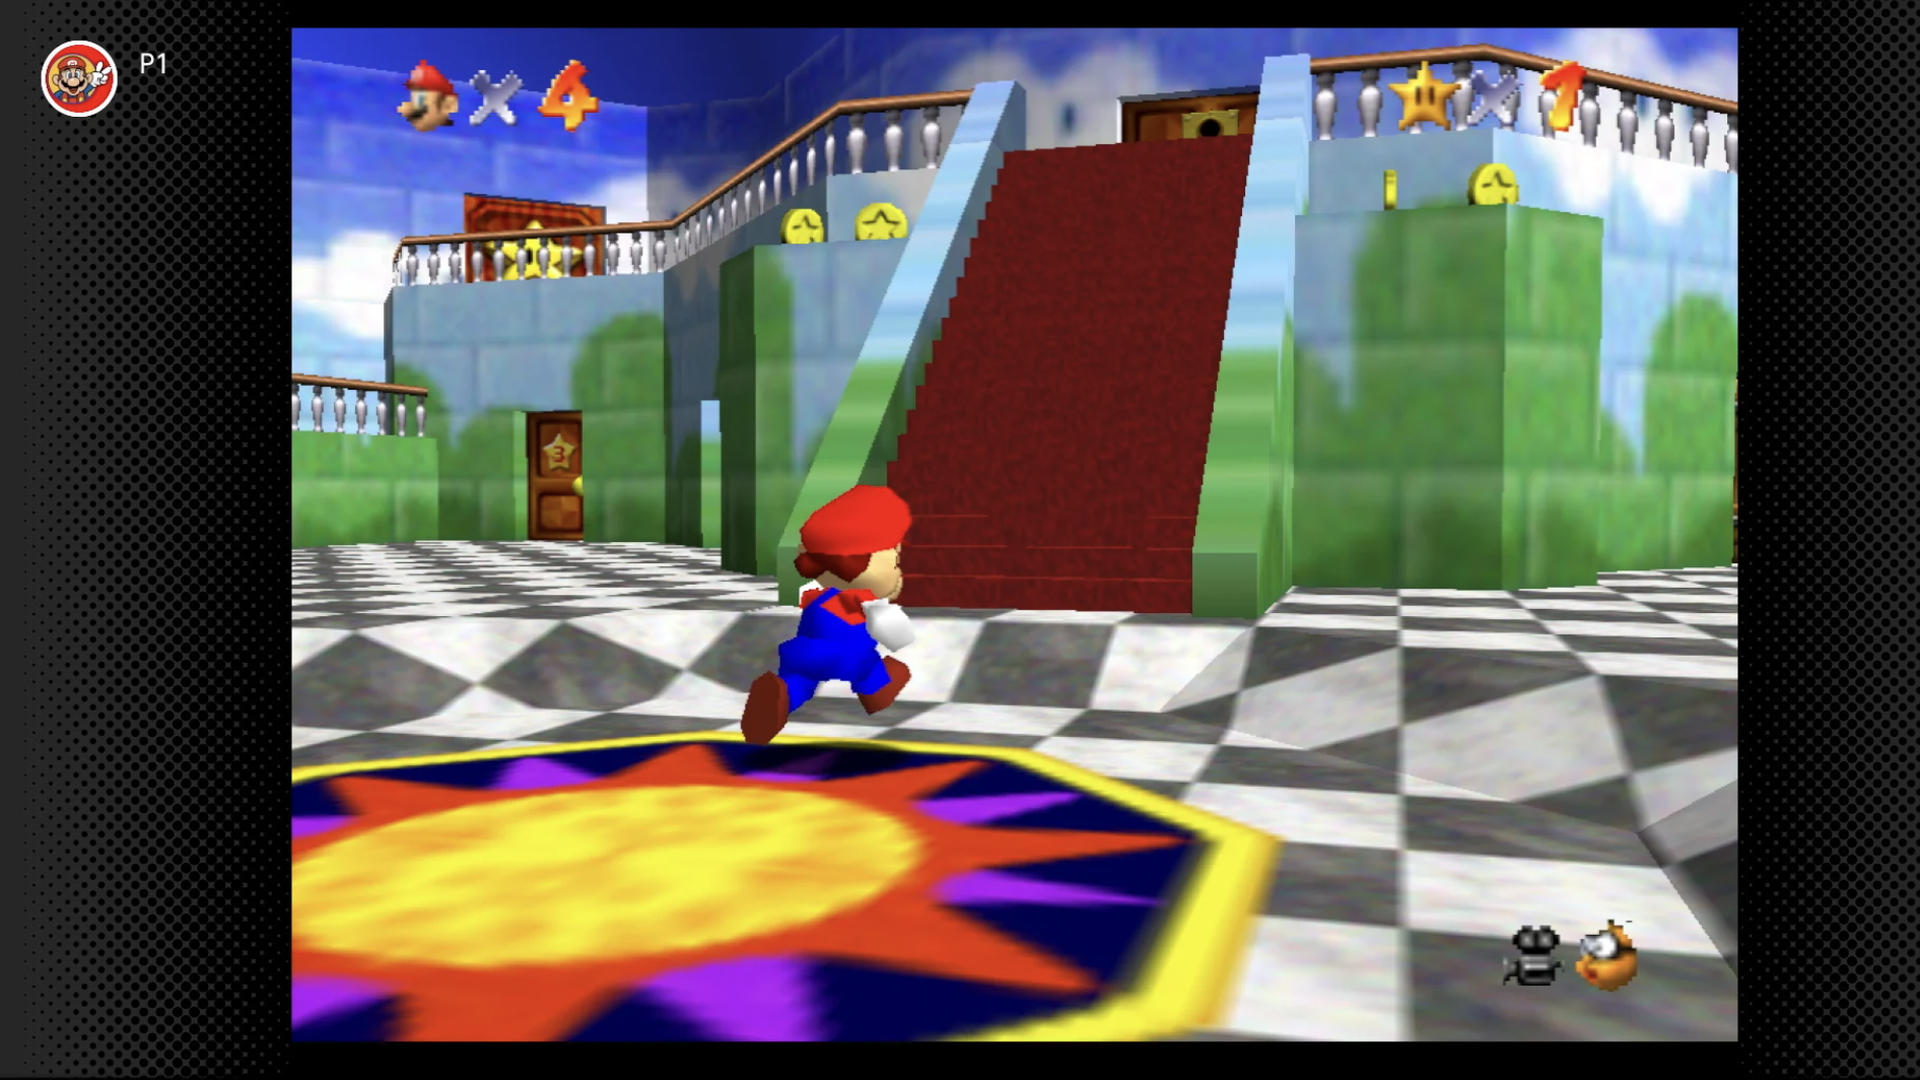 Mario running through a castle